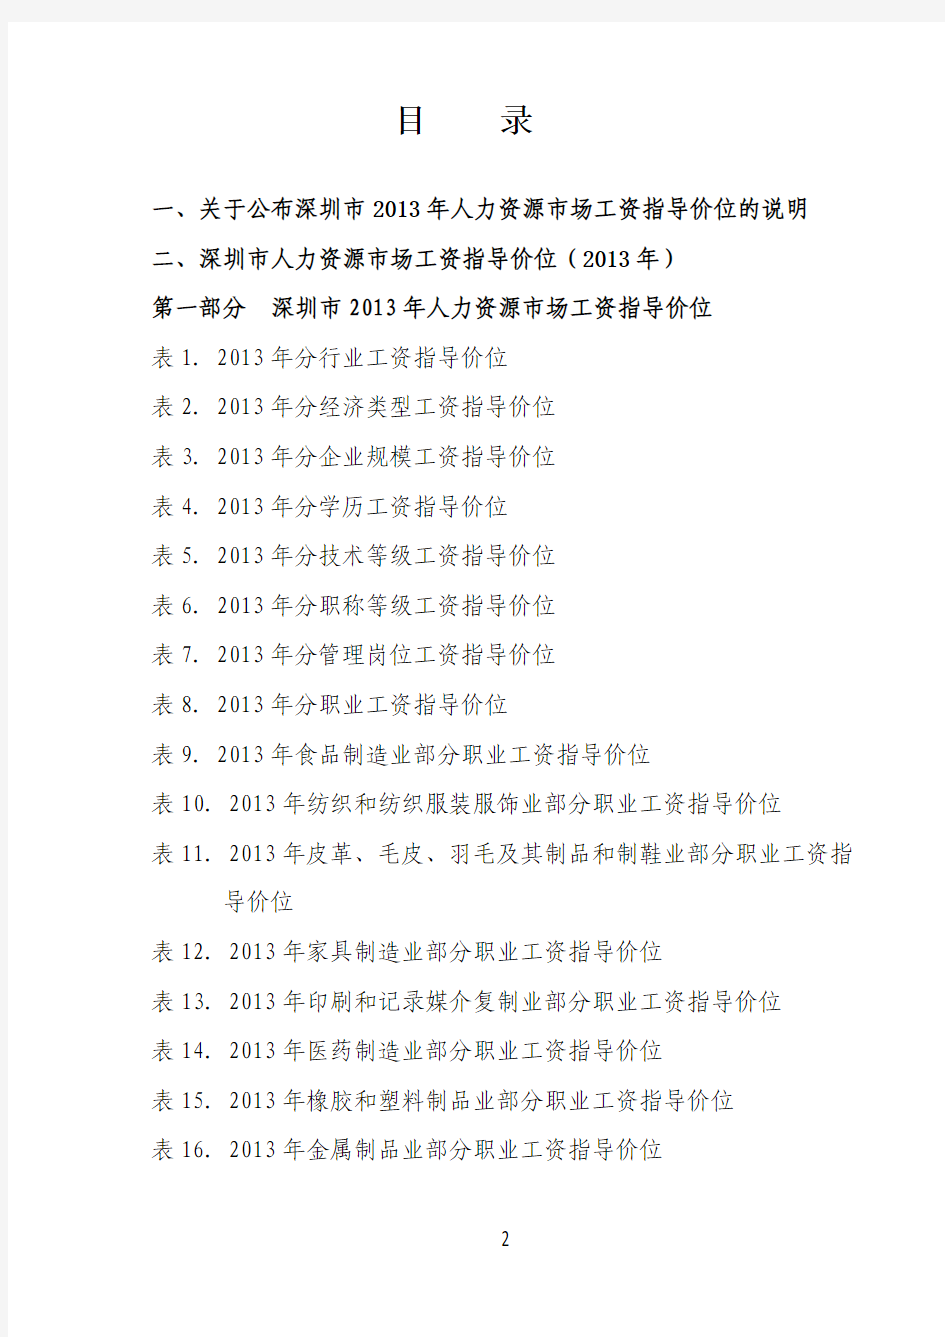 2013年深圳市人力资源市场工资指导价位